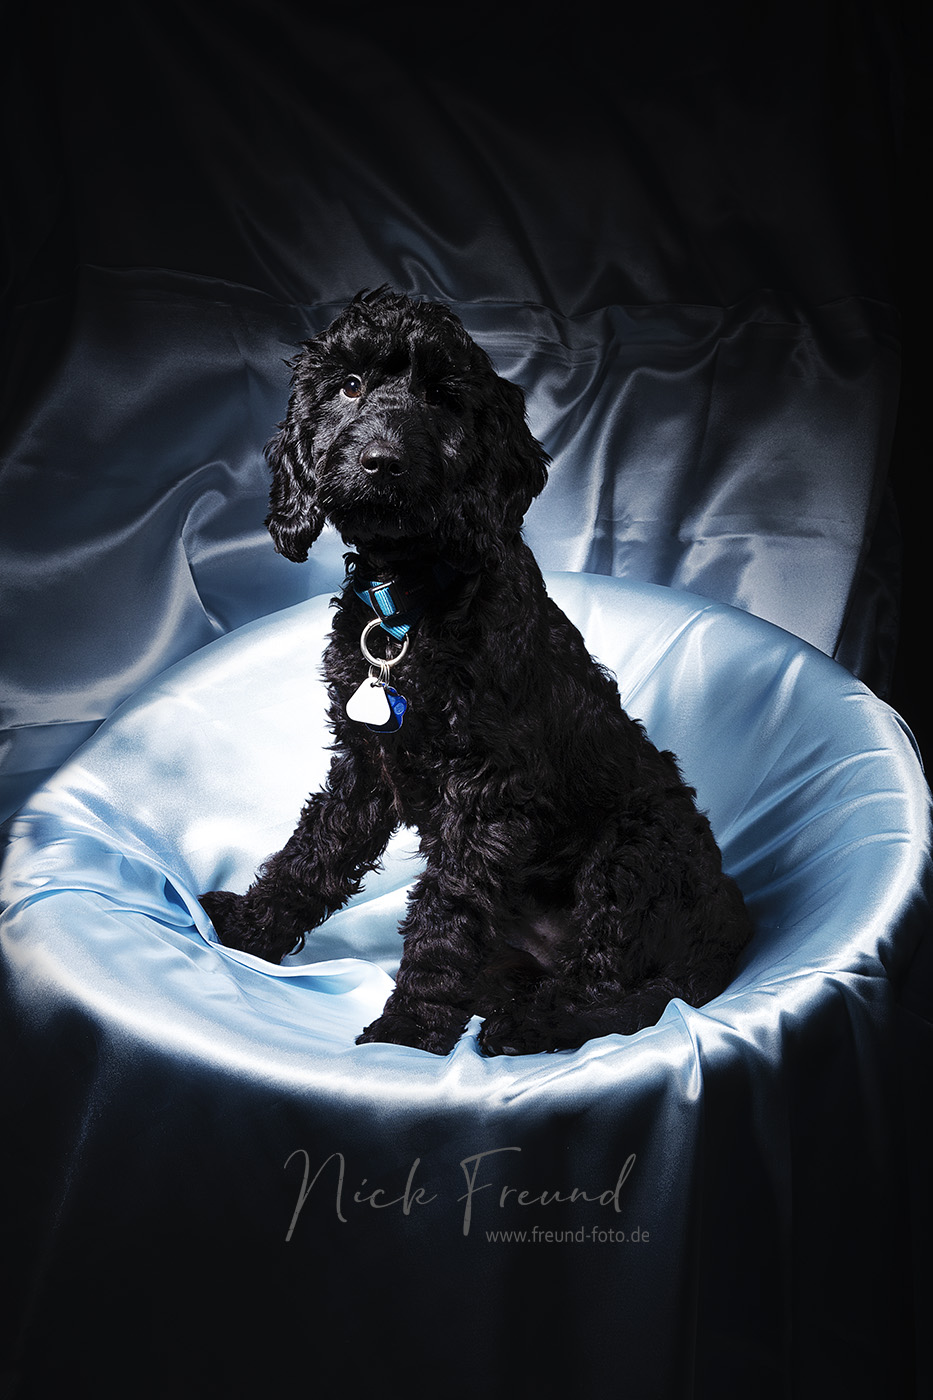 Schwarze Hund auf blauem Satin im Fotostudio